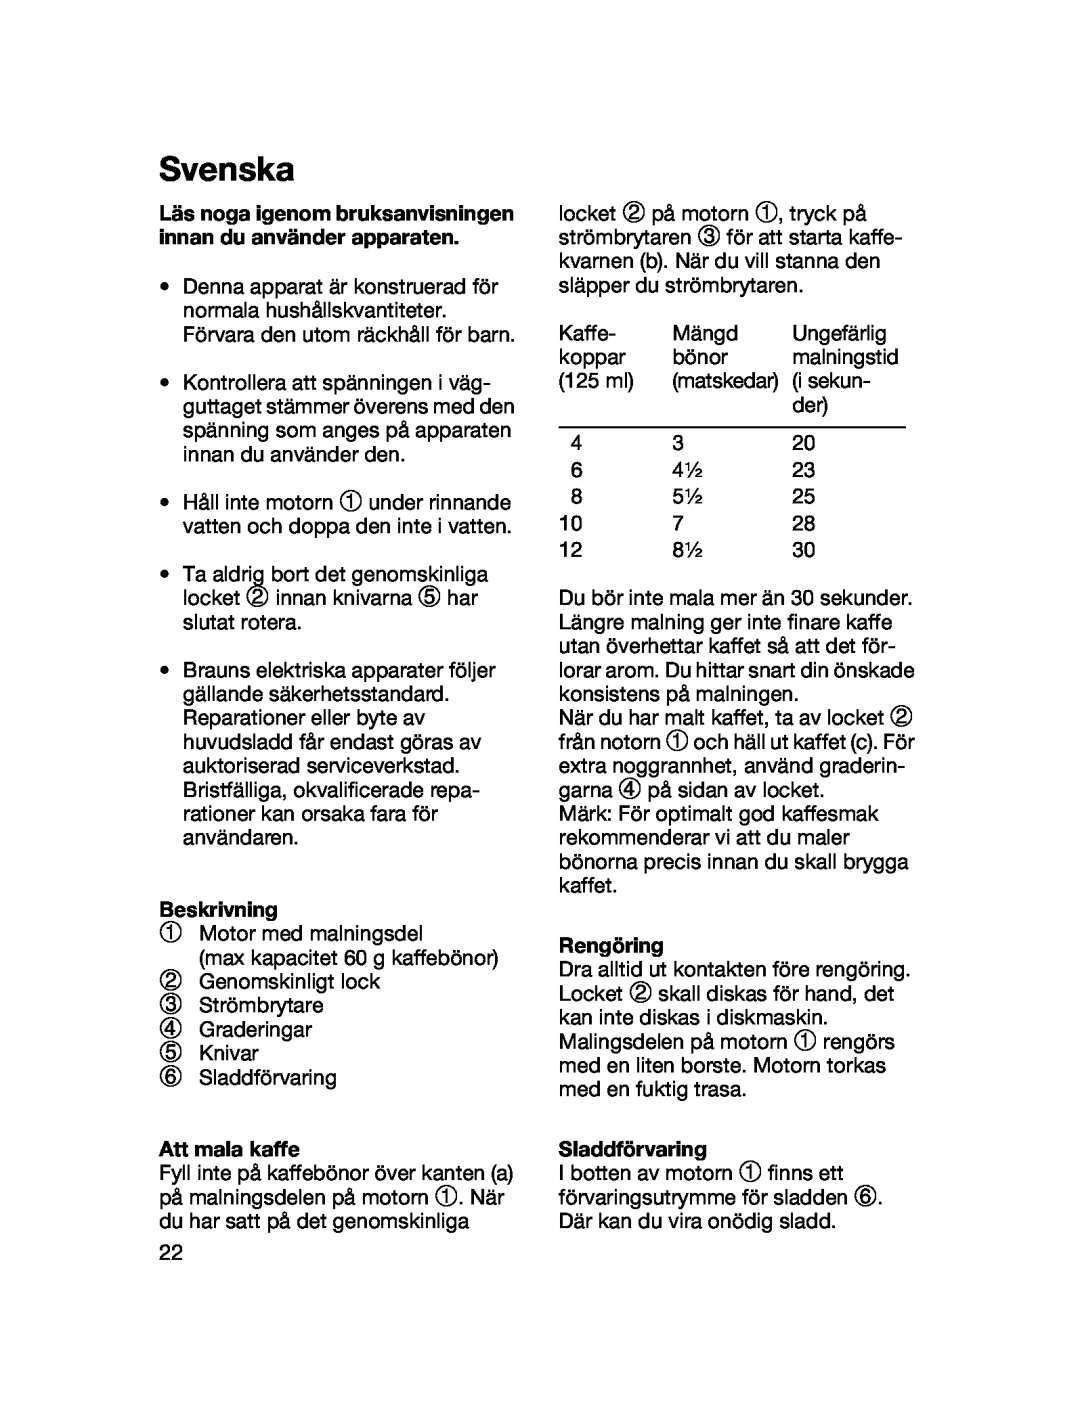 Braun 4041 manual Svenska, Beskrivning, Att mala kaffe, Rengöring, Sladdförvaring 